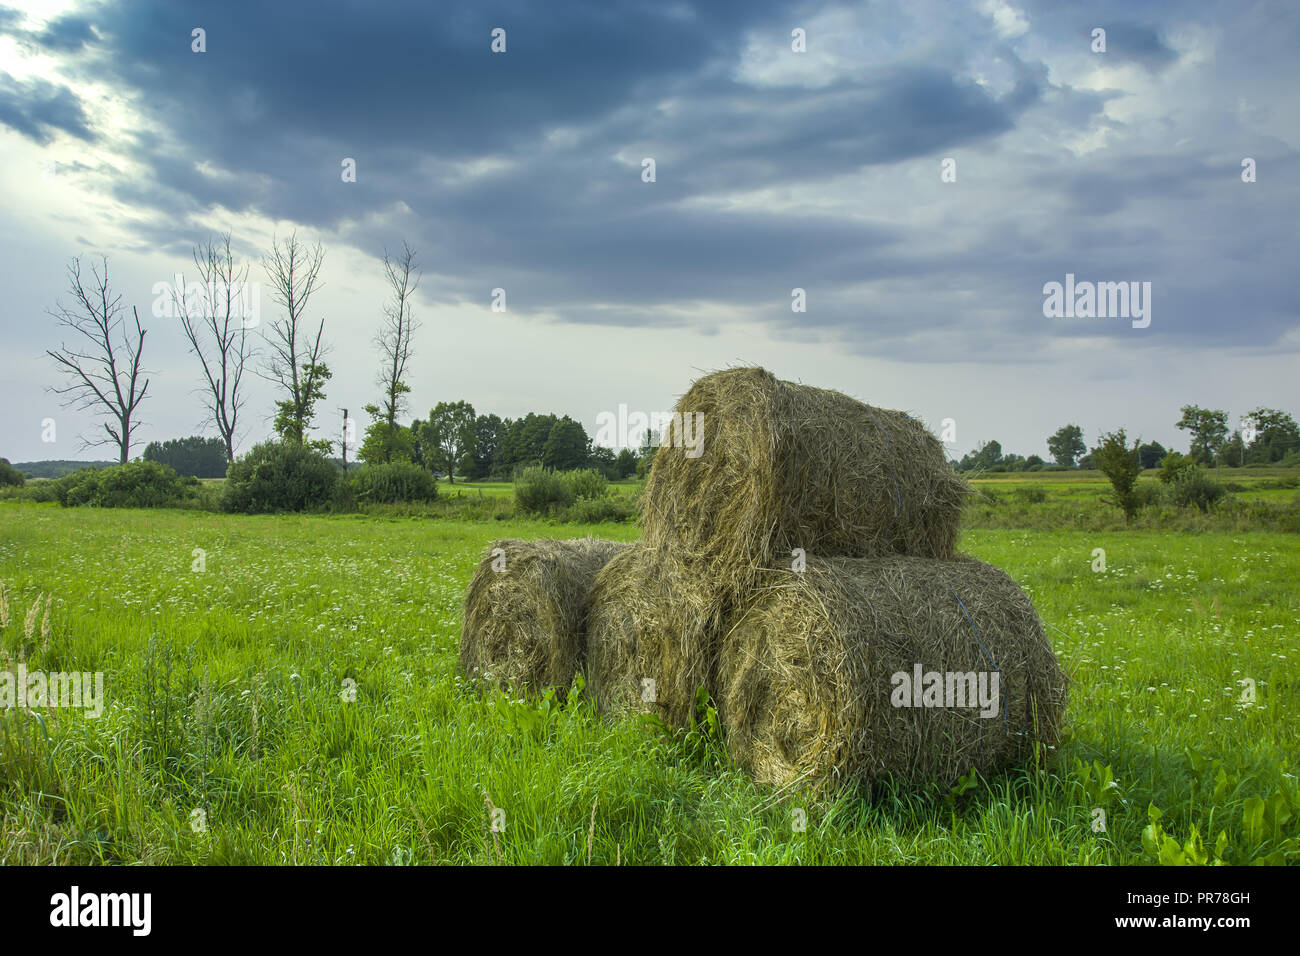 Bobinas de heno tumbado en una pila en un verde prado, árboles muertos secos y nubes oscuras en el cielo Foto de stock